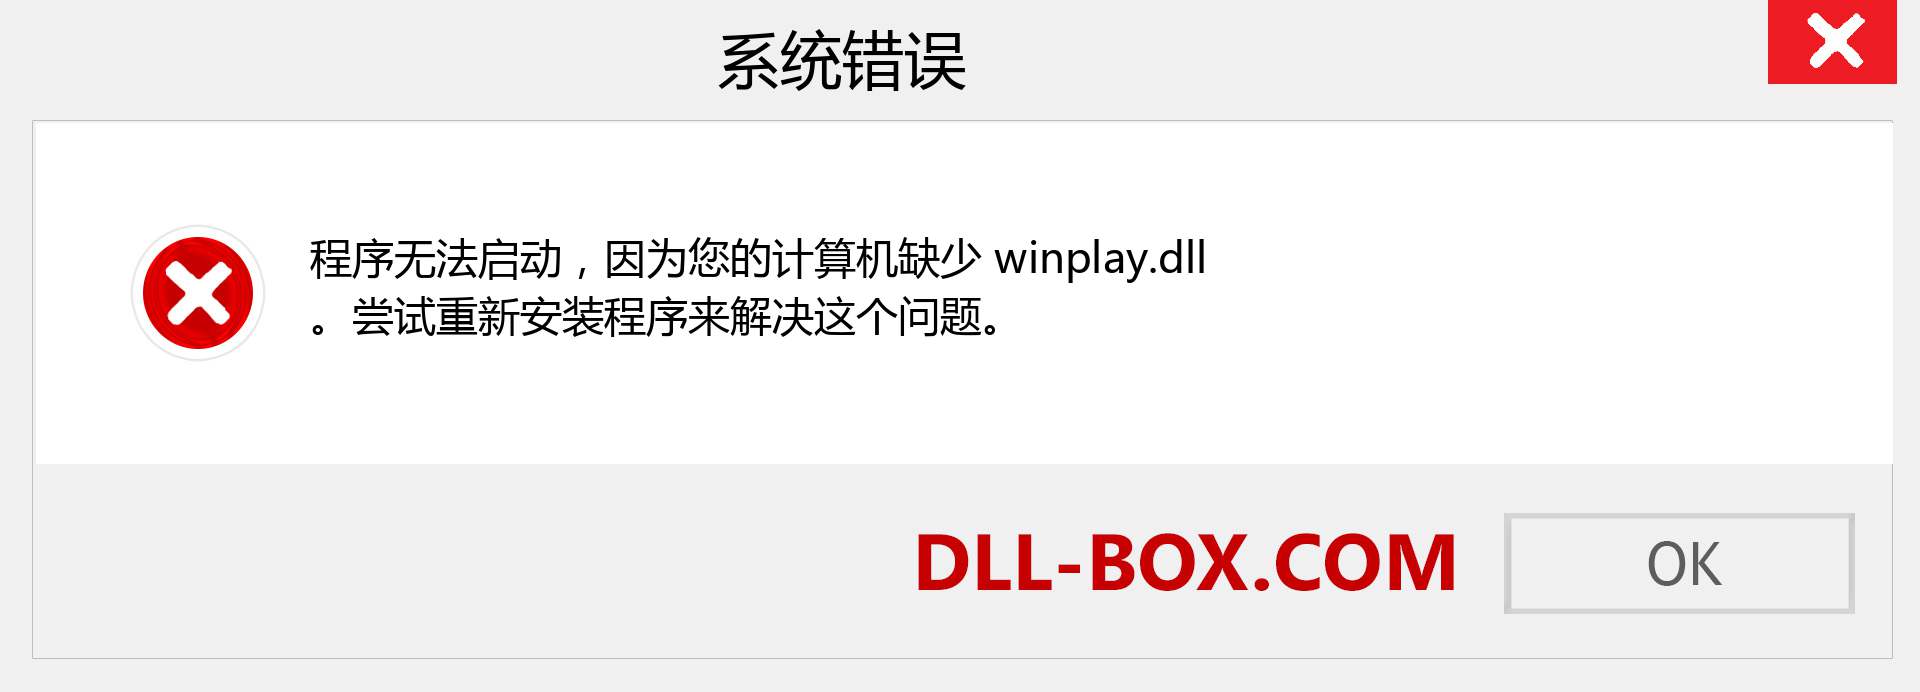 winplay.dll 文件丢失？。 适用于 Windows 7、8、10 的下载 - 修复 Windows、照片、图像上的 winplay dll 丢失错误